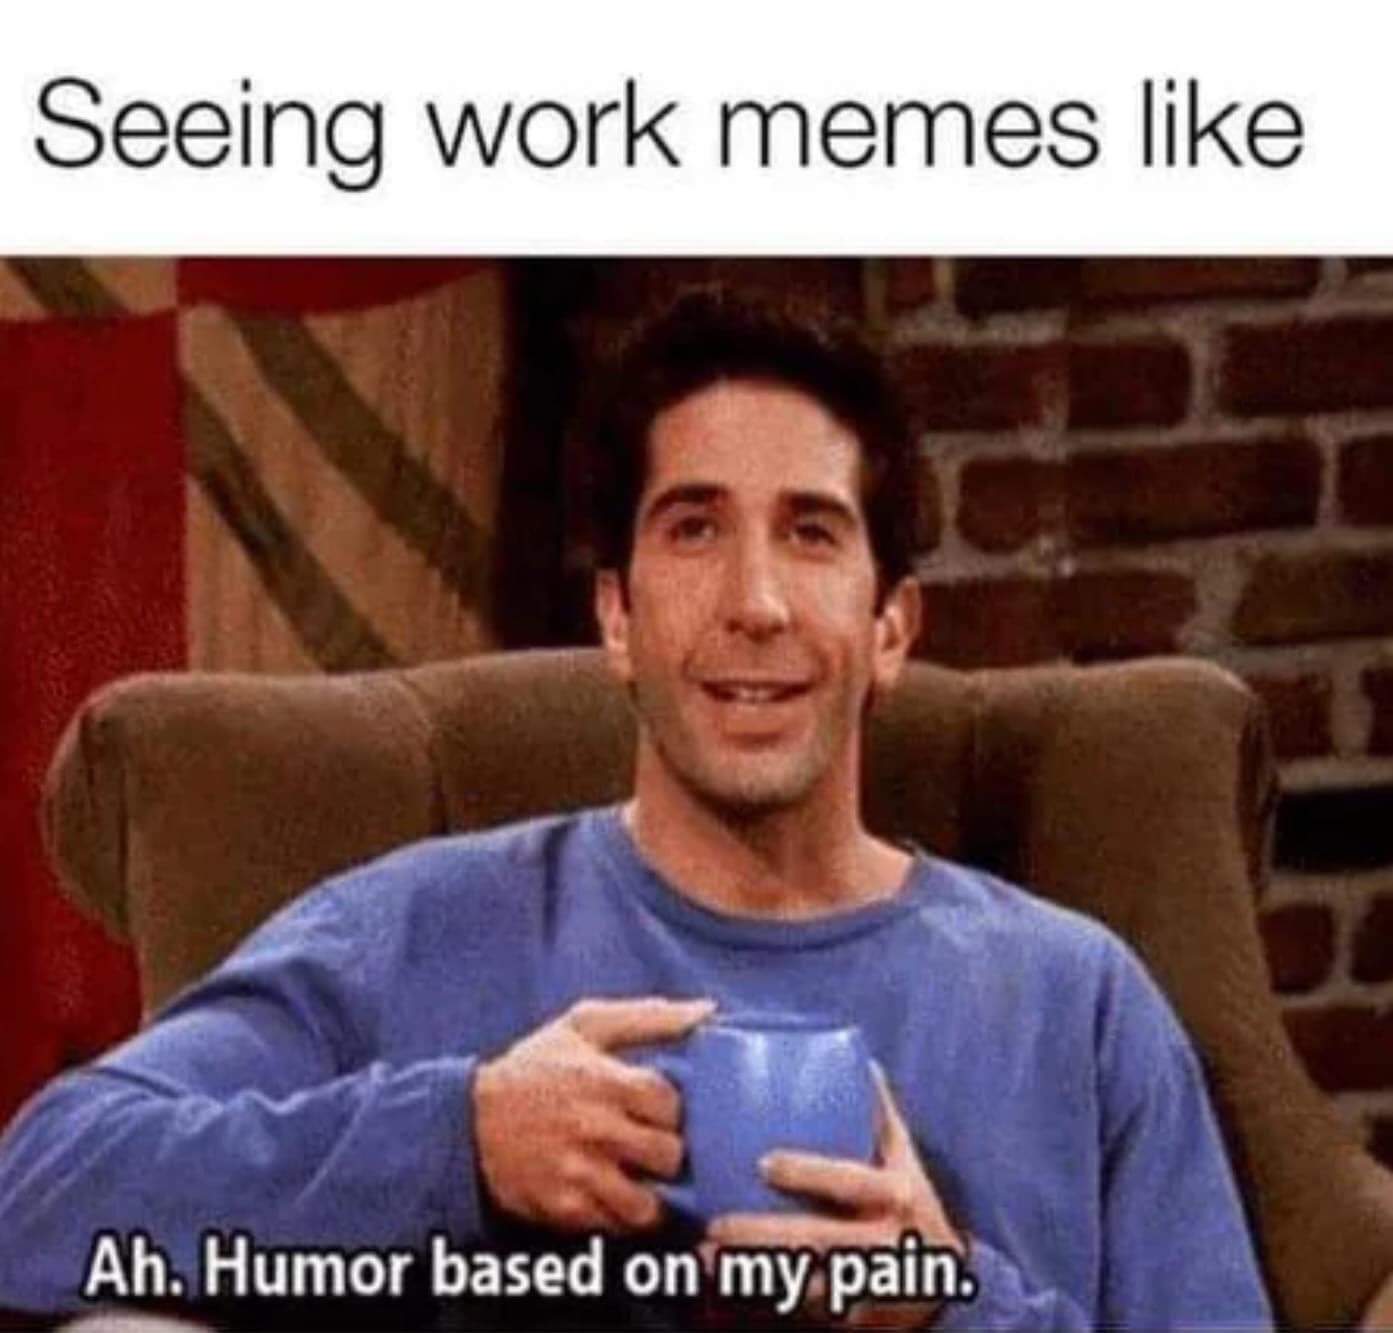 work memes - Seeing work memes Ah. Humor based on my pain.